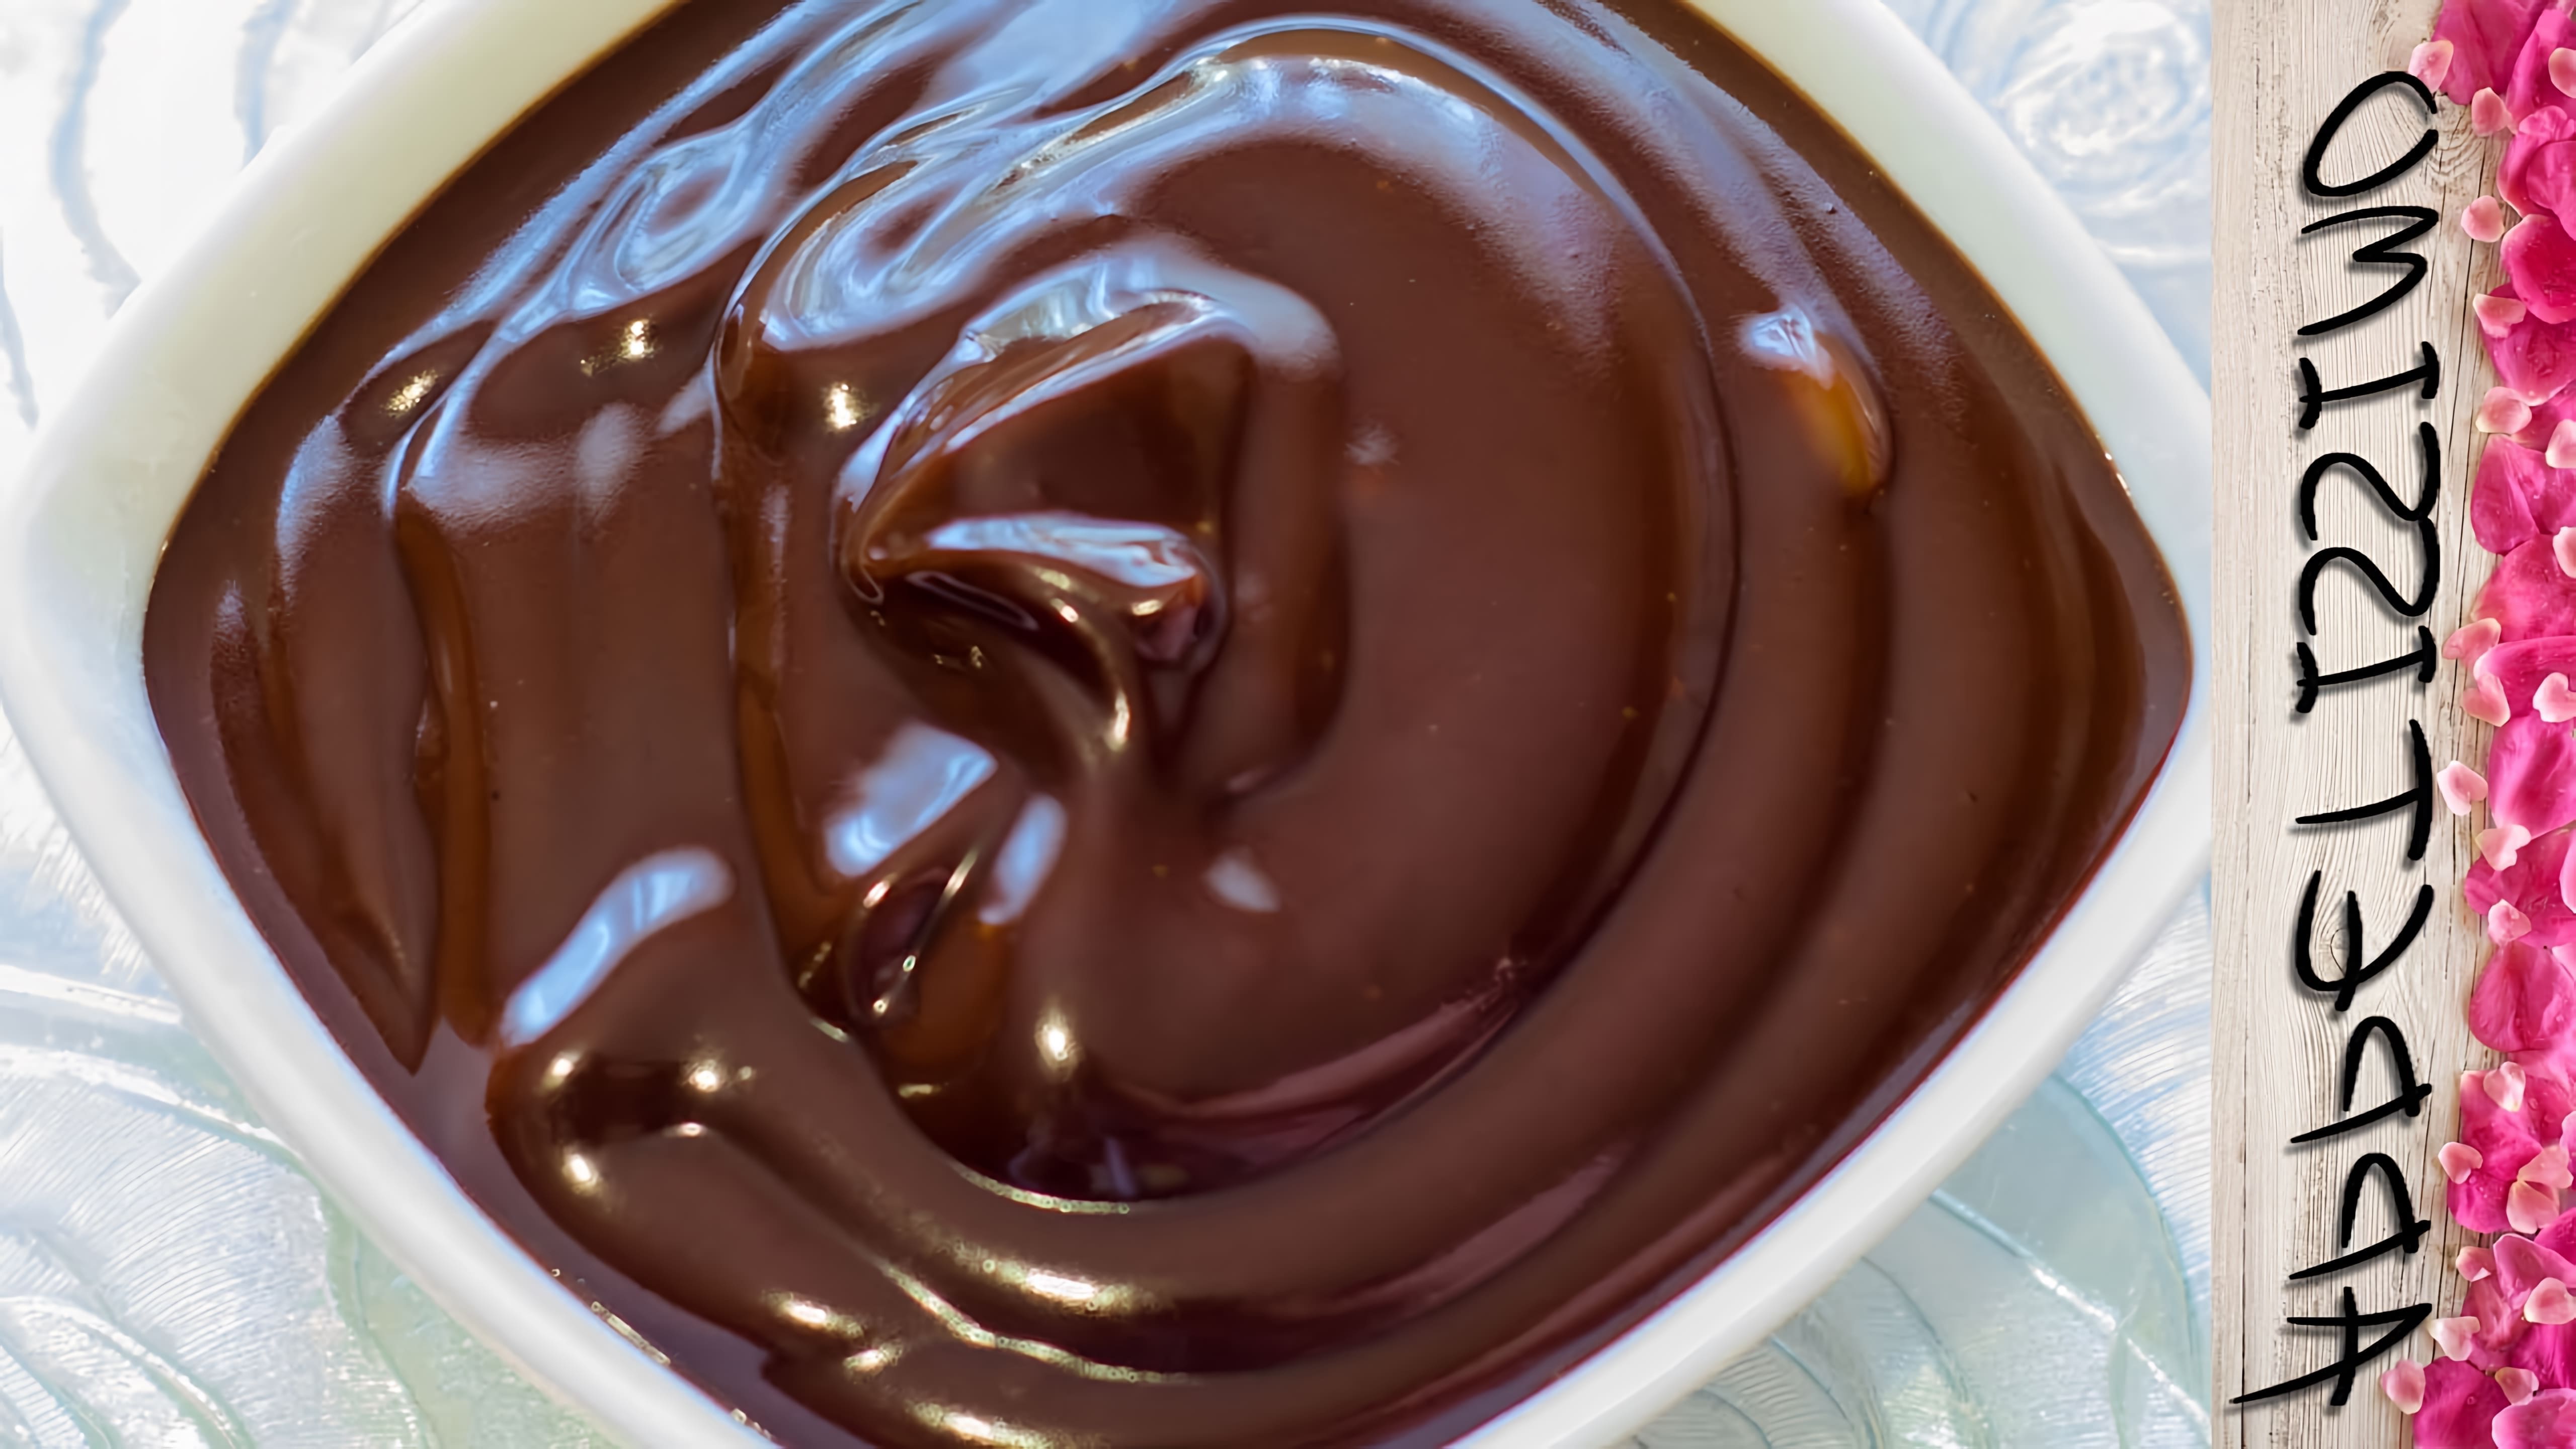 Видео как приготовить блестящий шоколадный глазурь, используя всего 5 простых ингредиентов - какао-порошок, сахарная пудра, вода и растительное масло